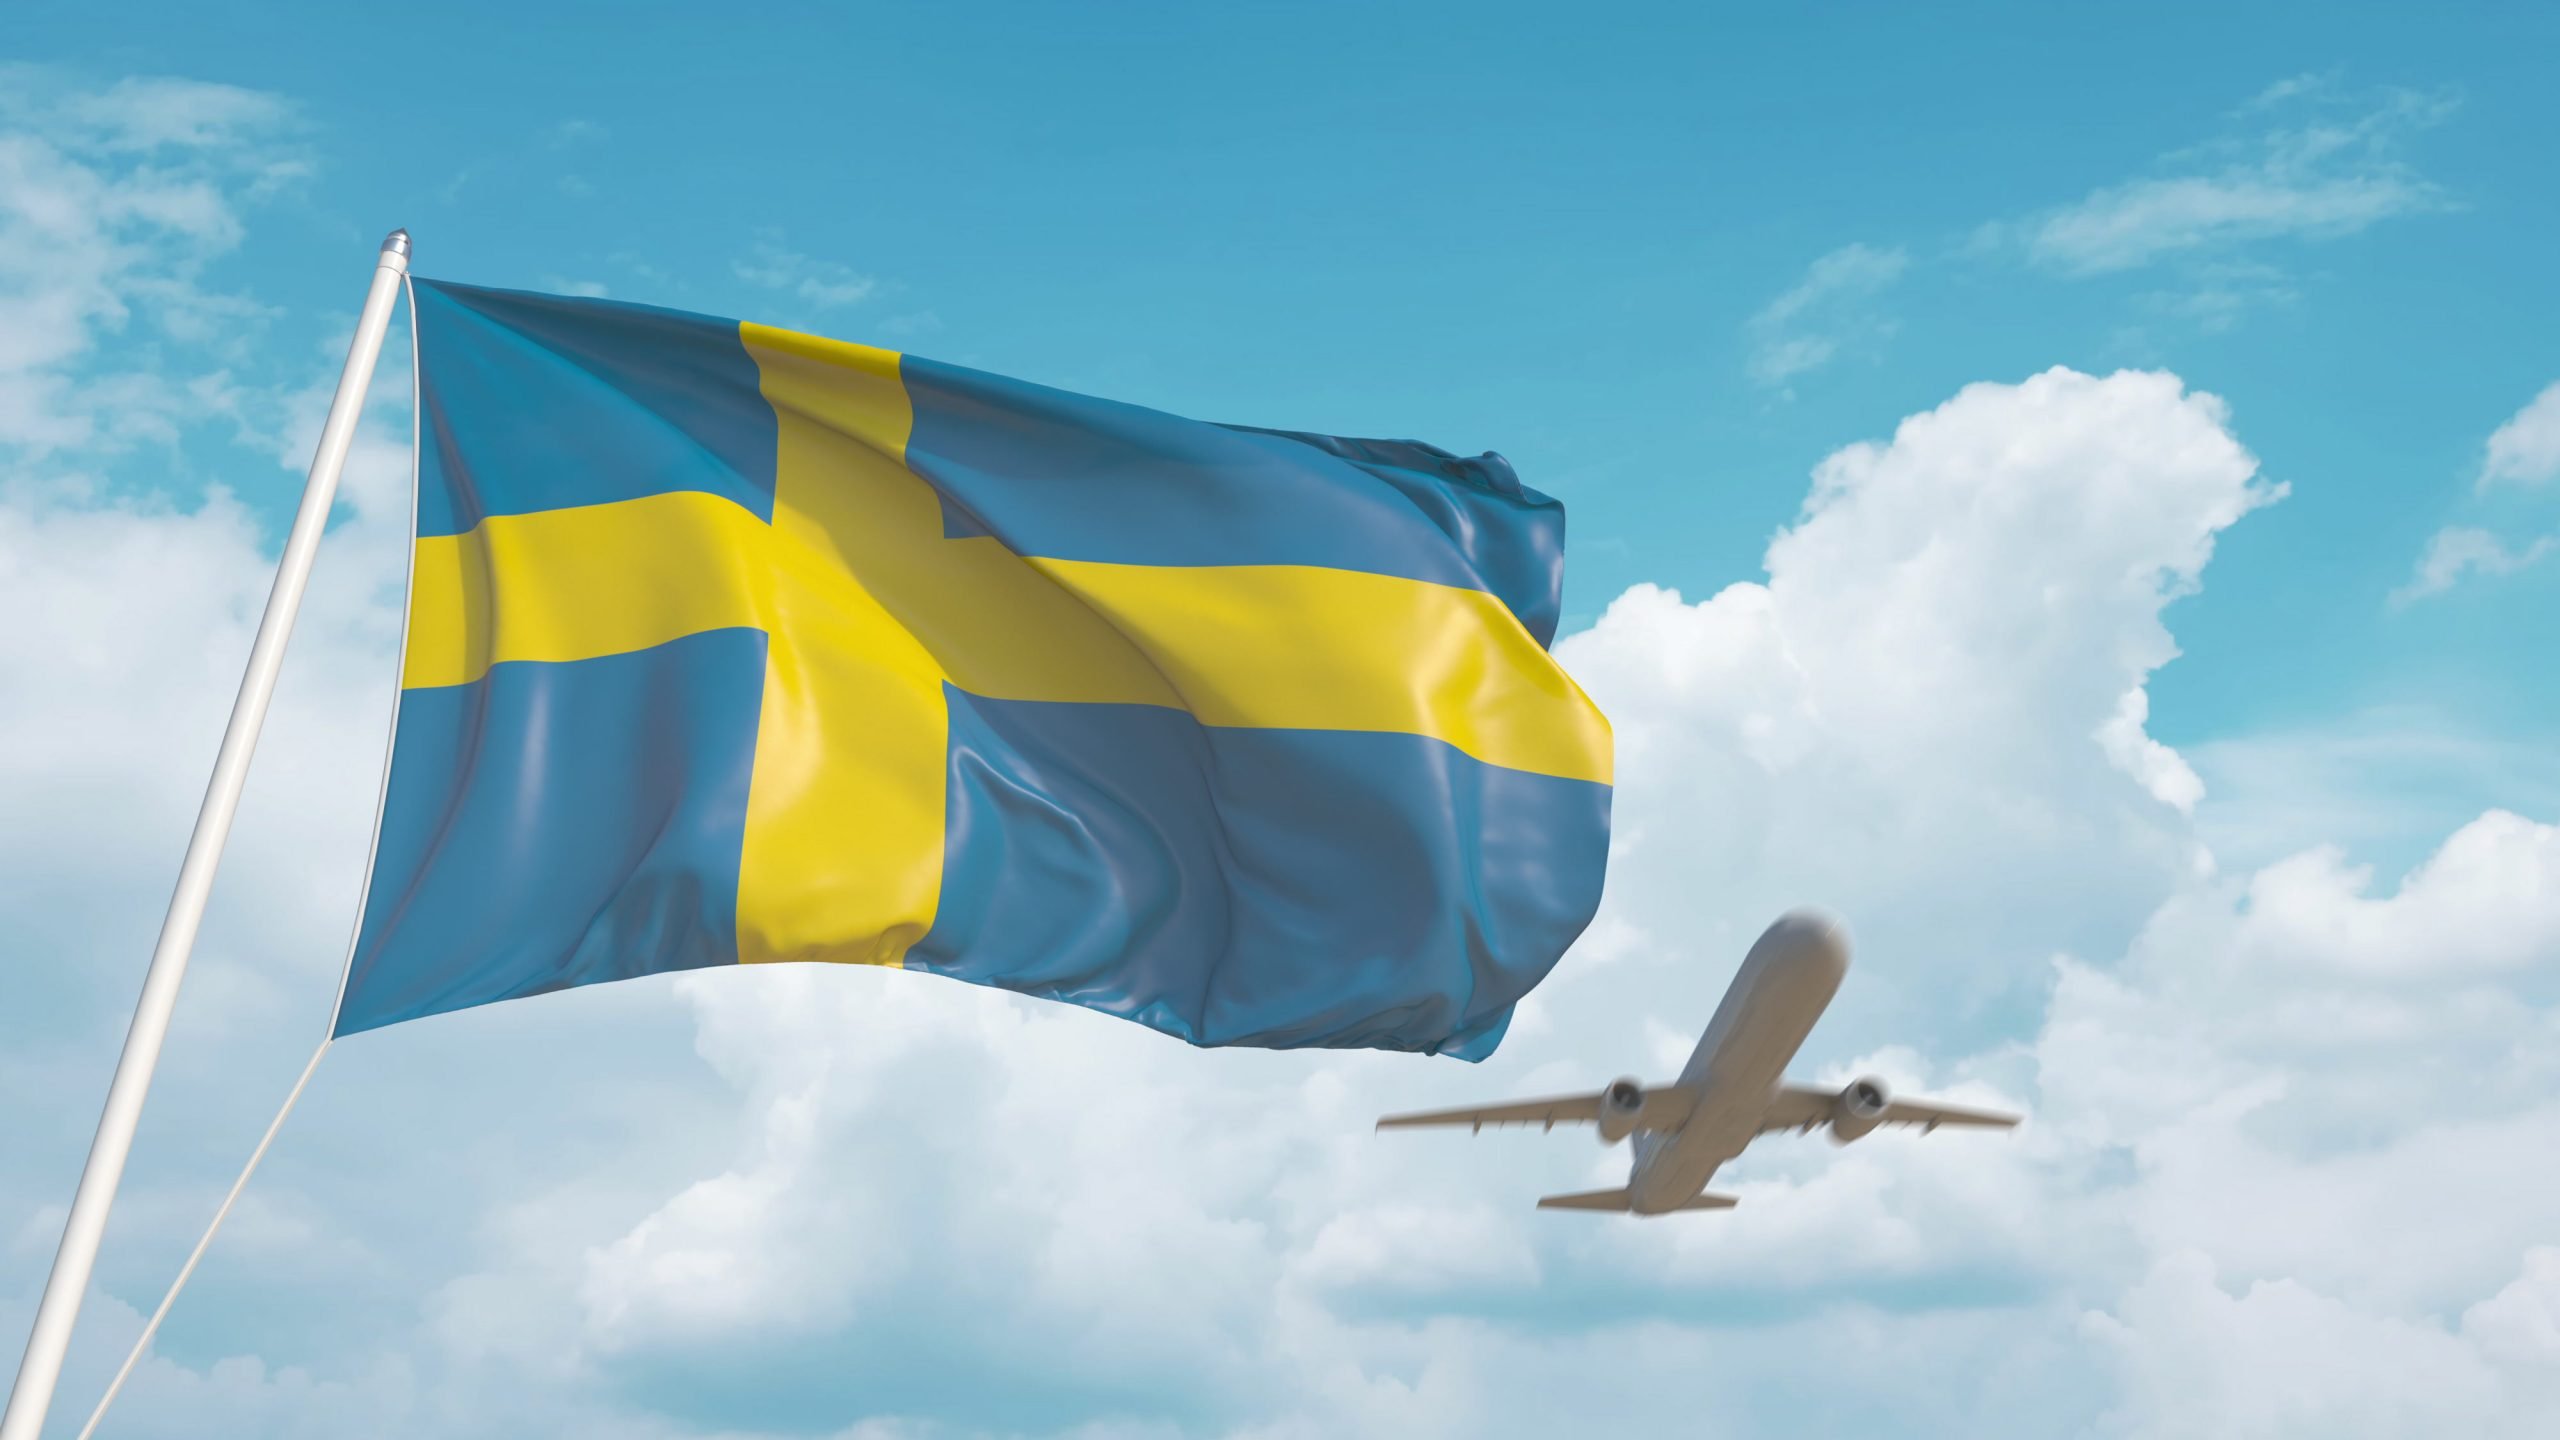 Porady dotyczące podróży w dużej części Szwecji zmieniono kod na żółty